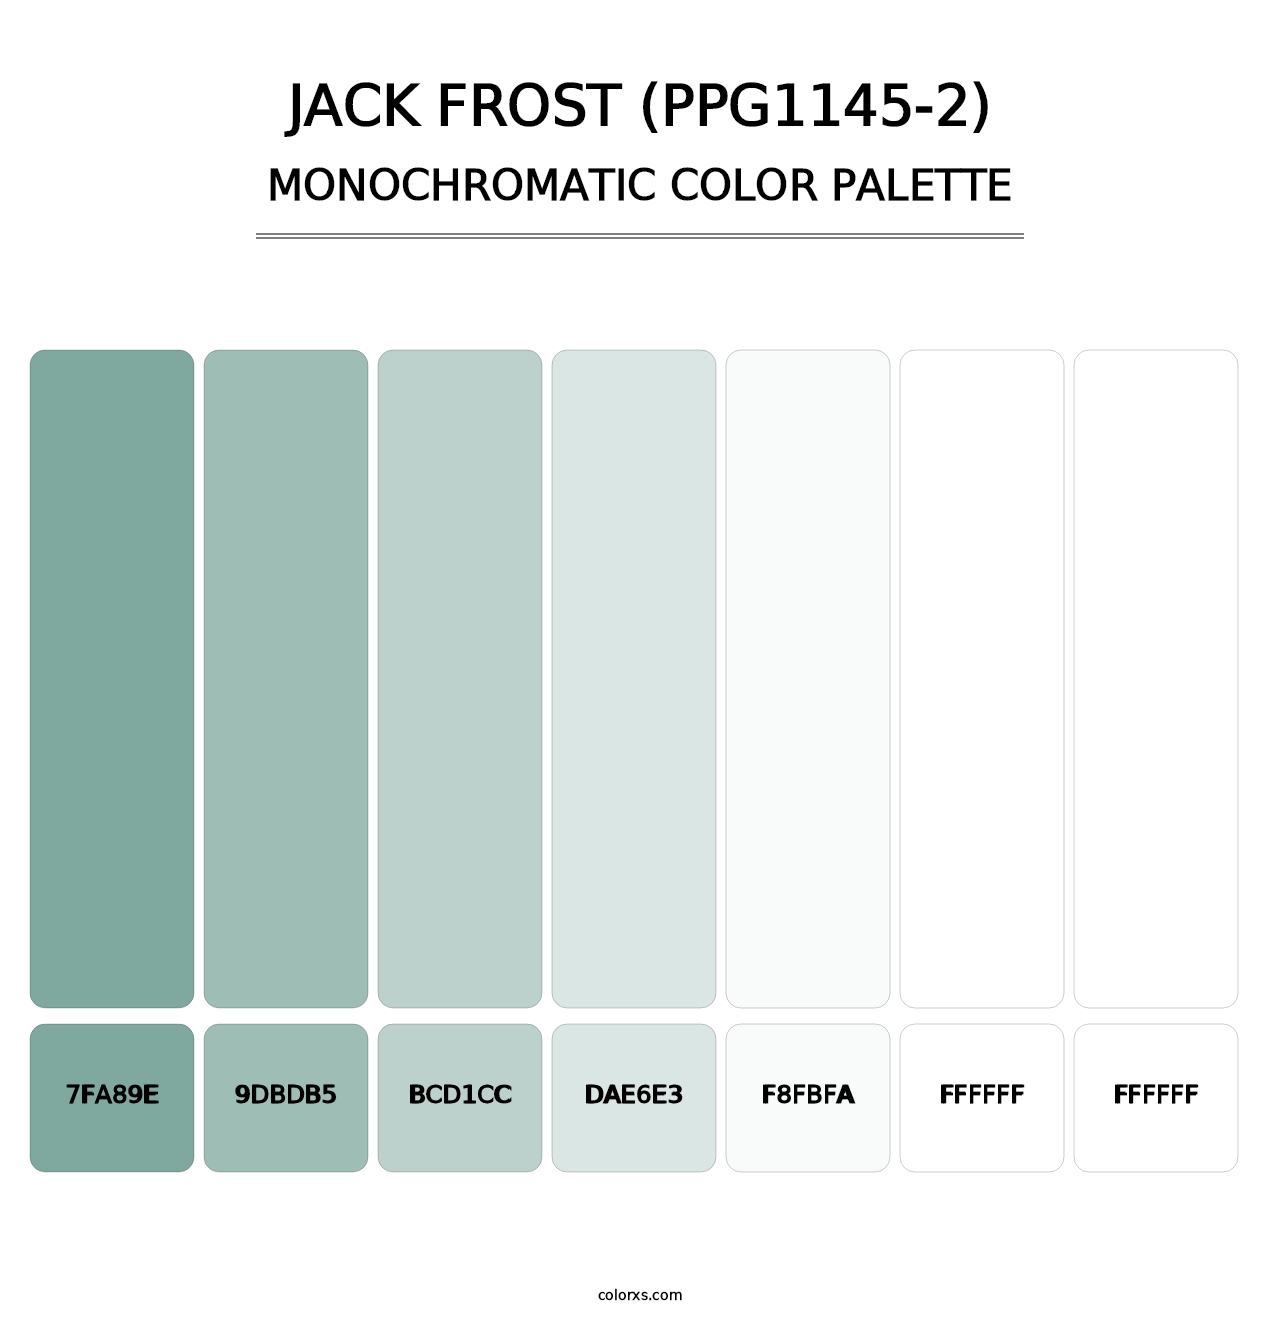 Jack Frost (PPG1145-2) - Monochromatic Color Palette